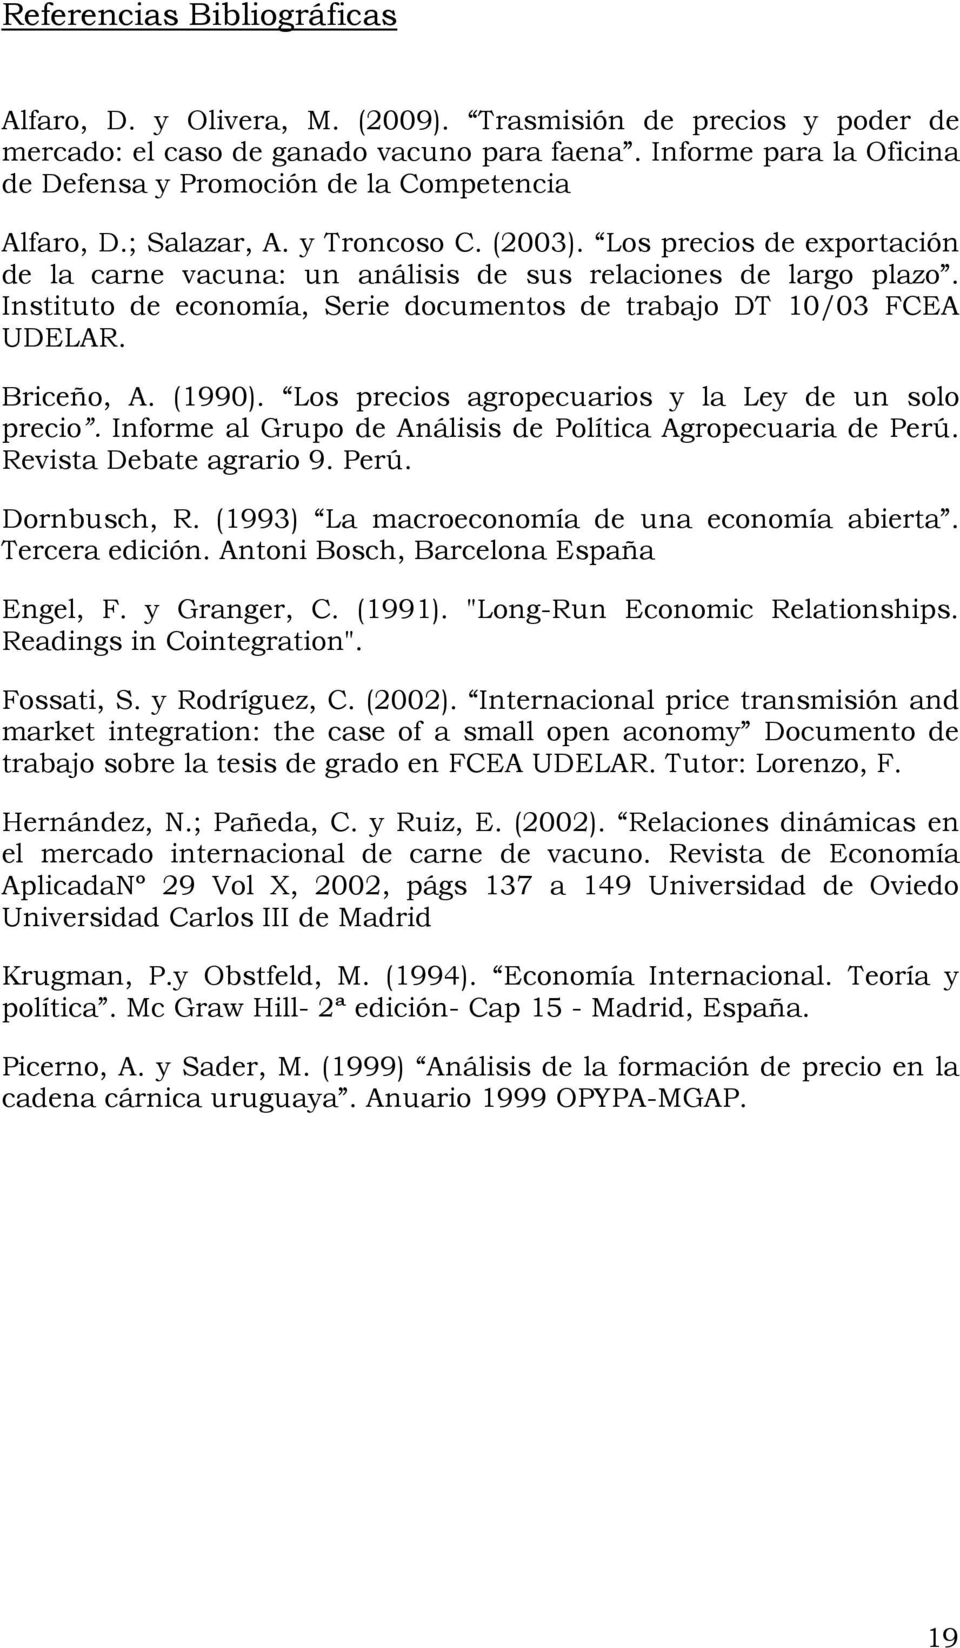 Los precios de exportación de la carne vacuna: un análisis de sus relaciones de largo plazo. Instituto de economía, Serie documentos de trabajo DT 10/03 FCEA UDELAR. Briceño, A. (1990).